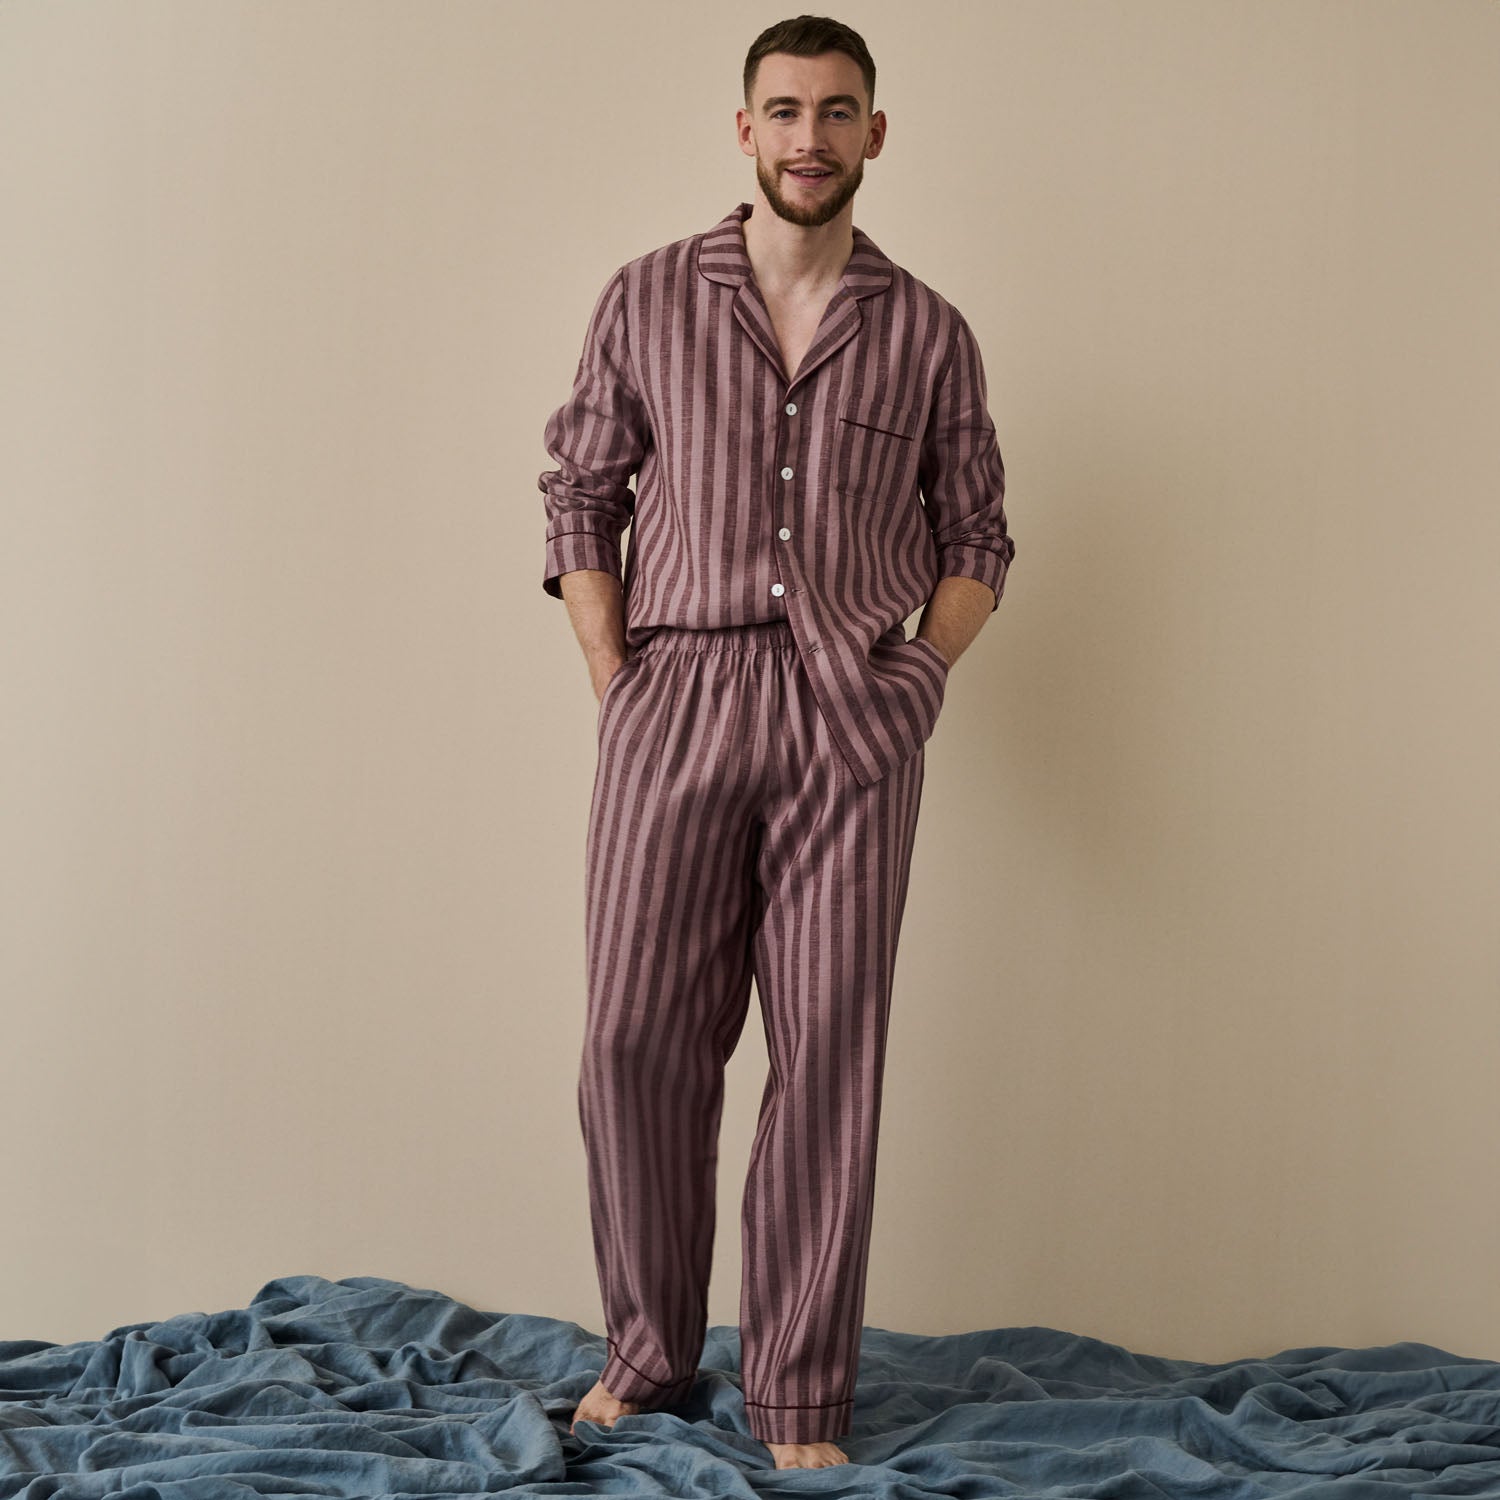 Port & Woodrose Striped Linen Men's PJ Trouser Set